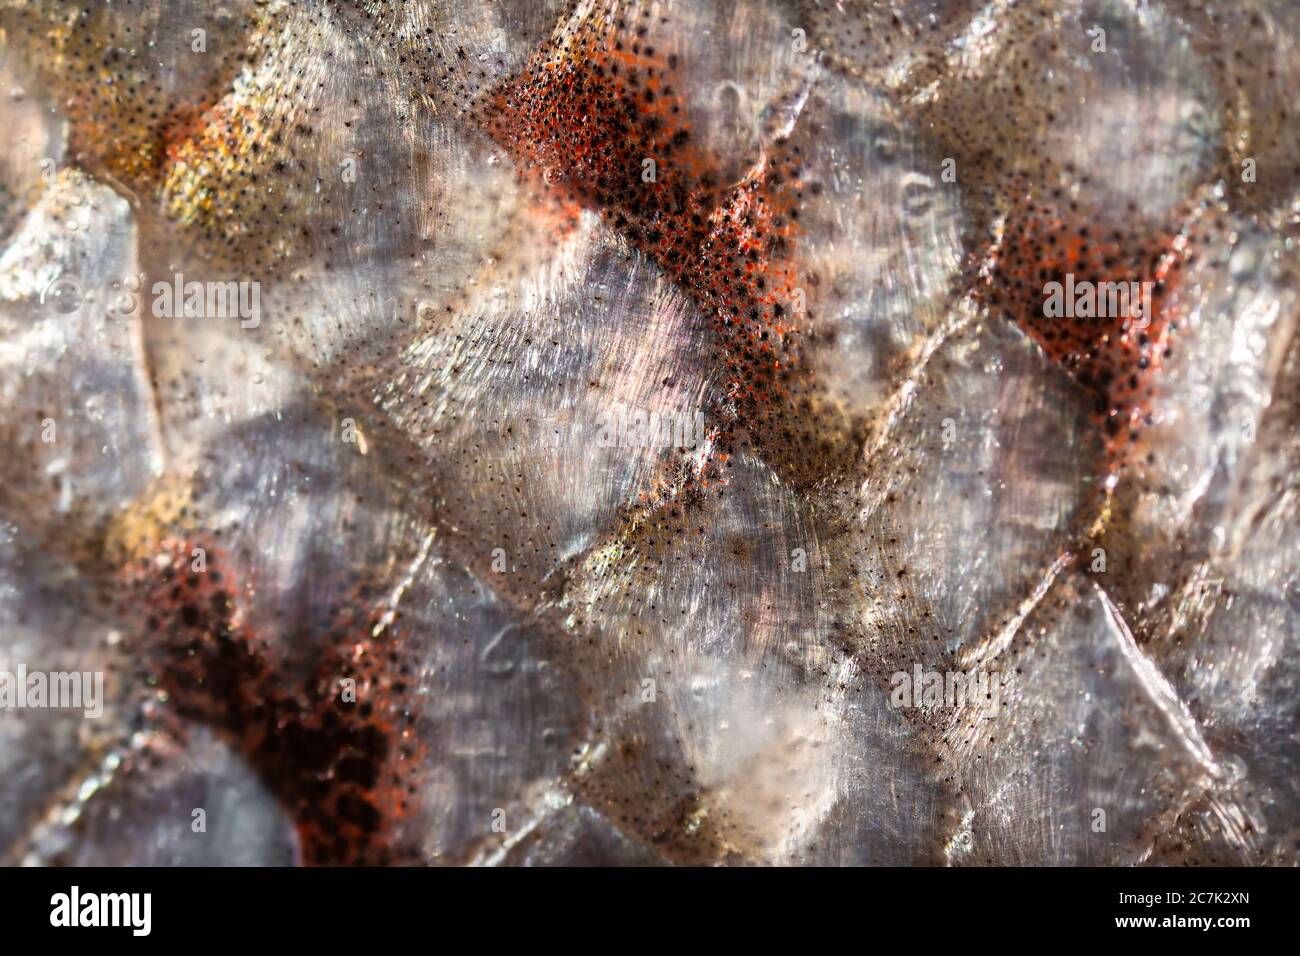 Extreme Makroaufnahme eines tasmanischen Lachsfilets. Fischschuppen. Stockfoto